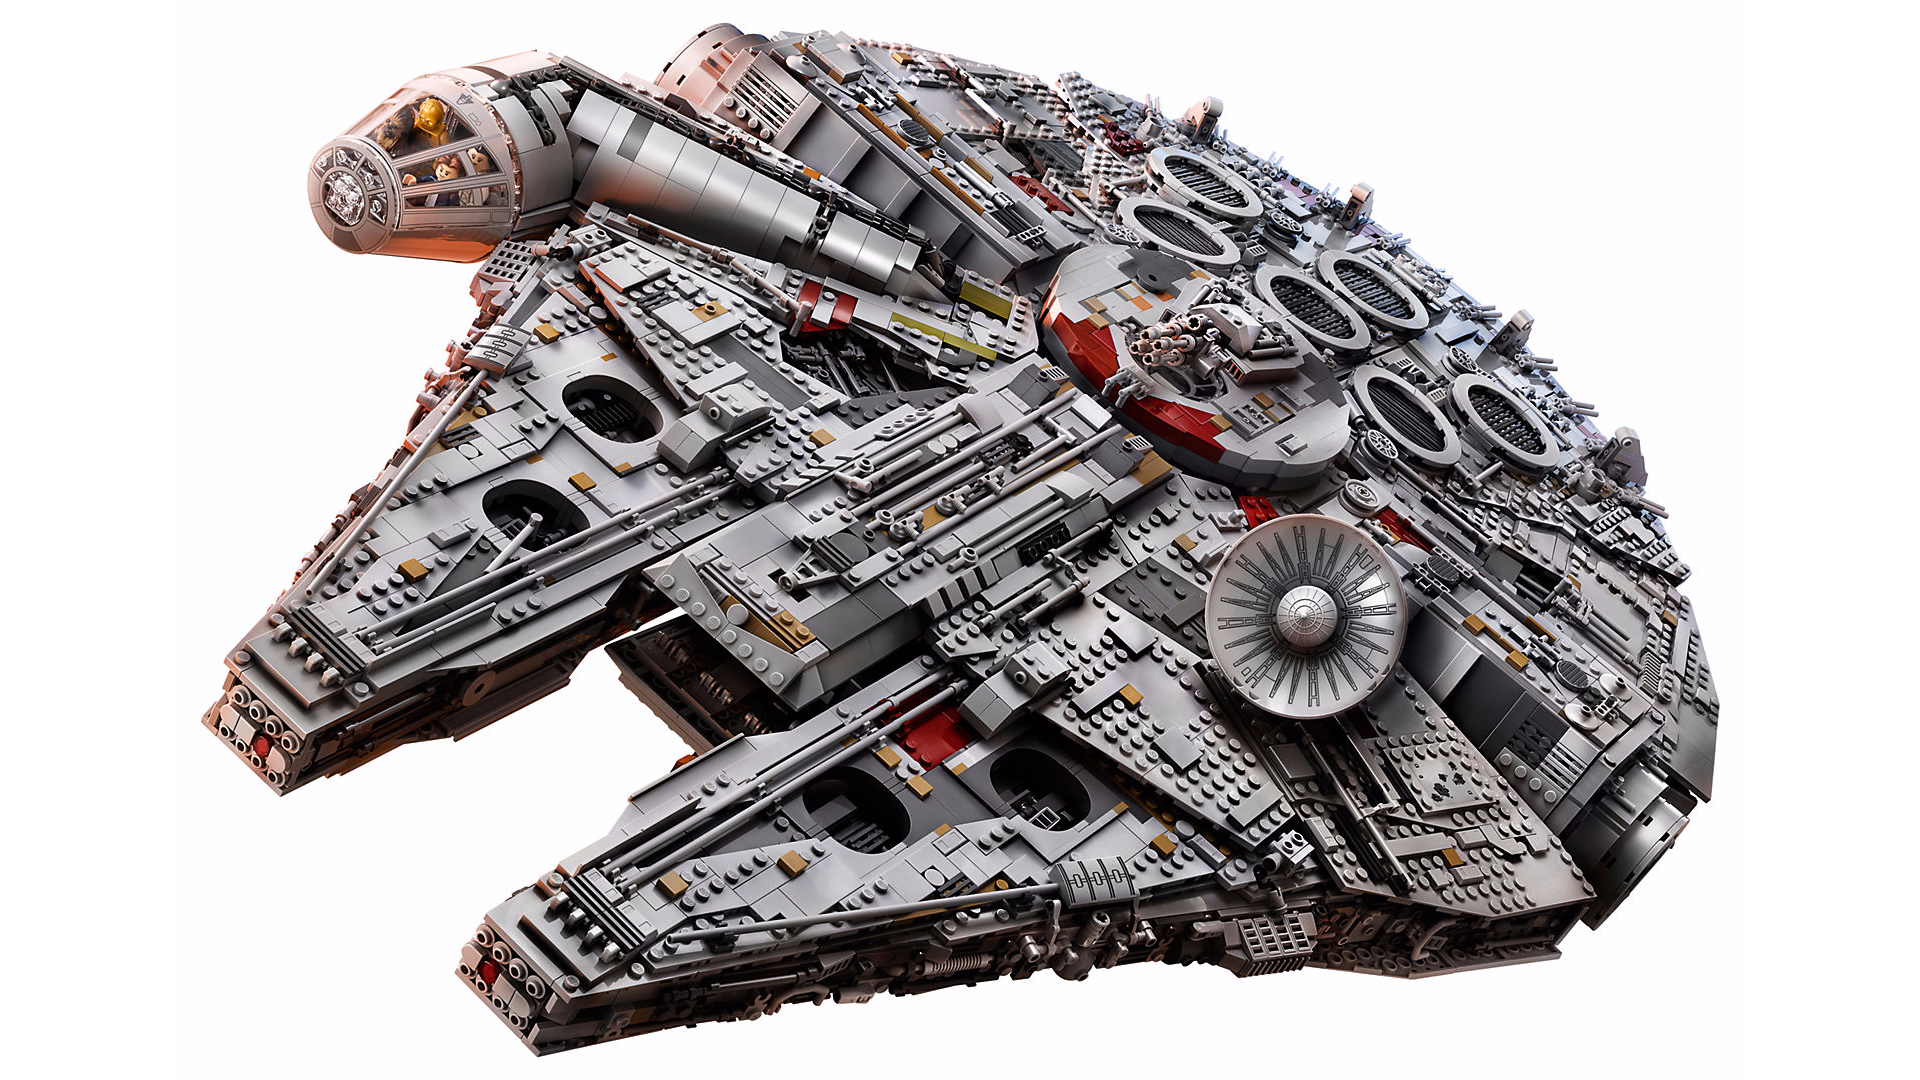 El Ultimate Collectors Millennium Falcon de LEGO, es el set más grande con 7.500 piezas